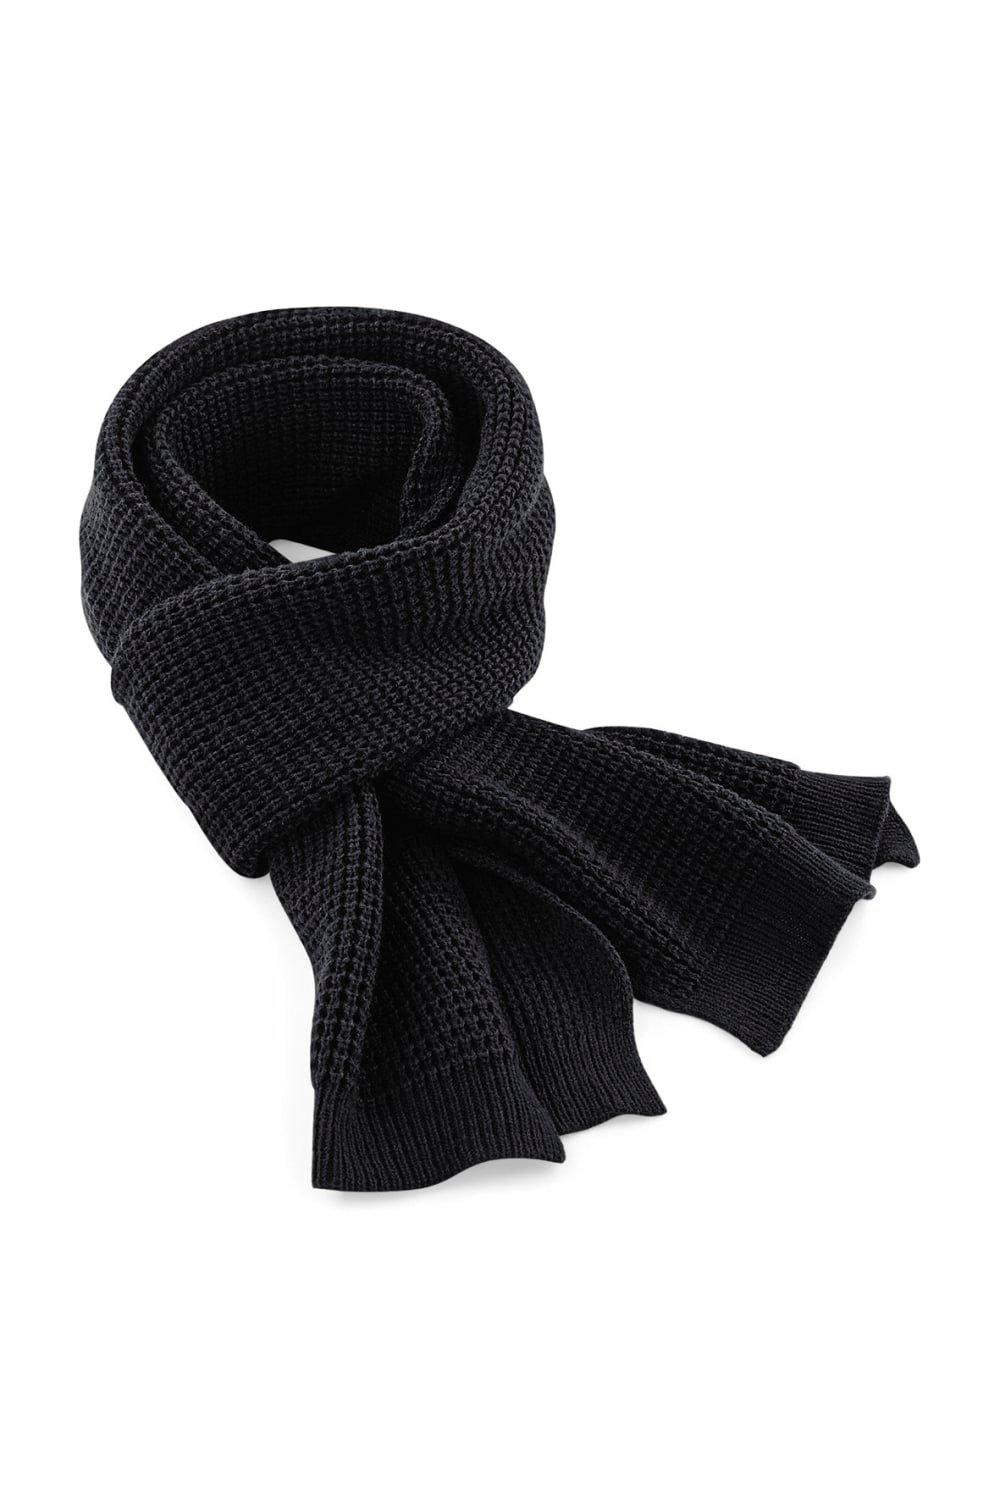 Классический зимний шарф вафельной вязки Beechfield, черный